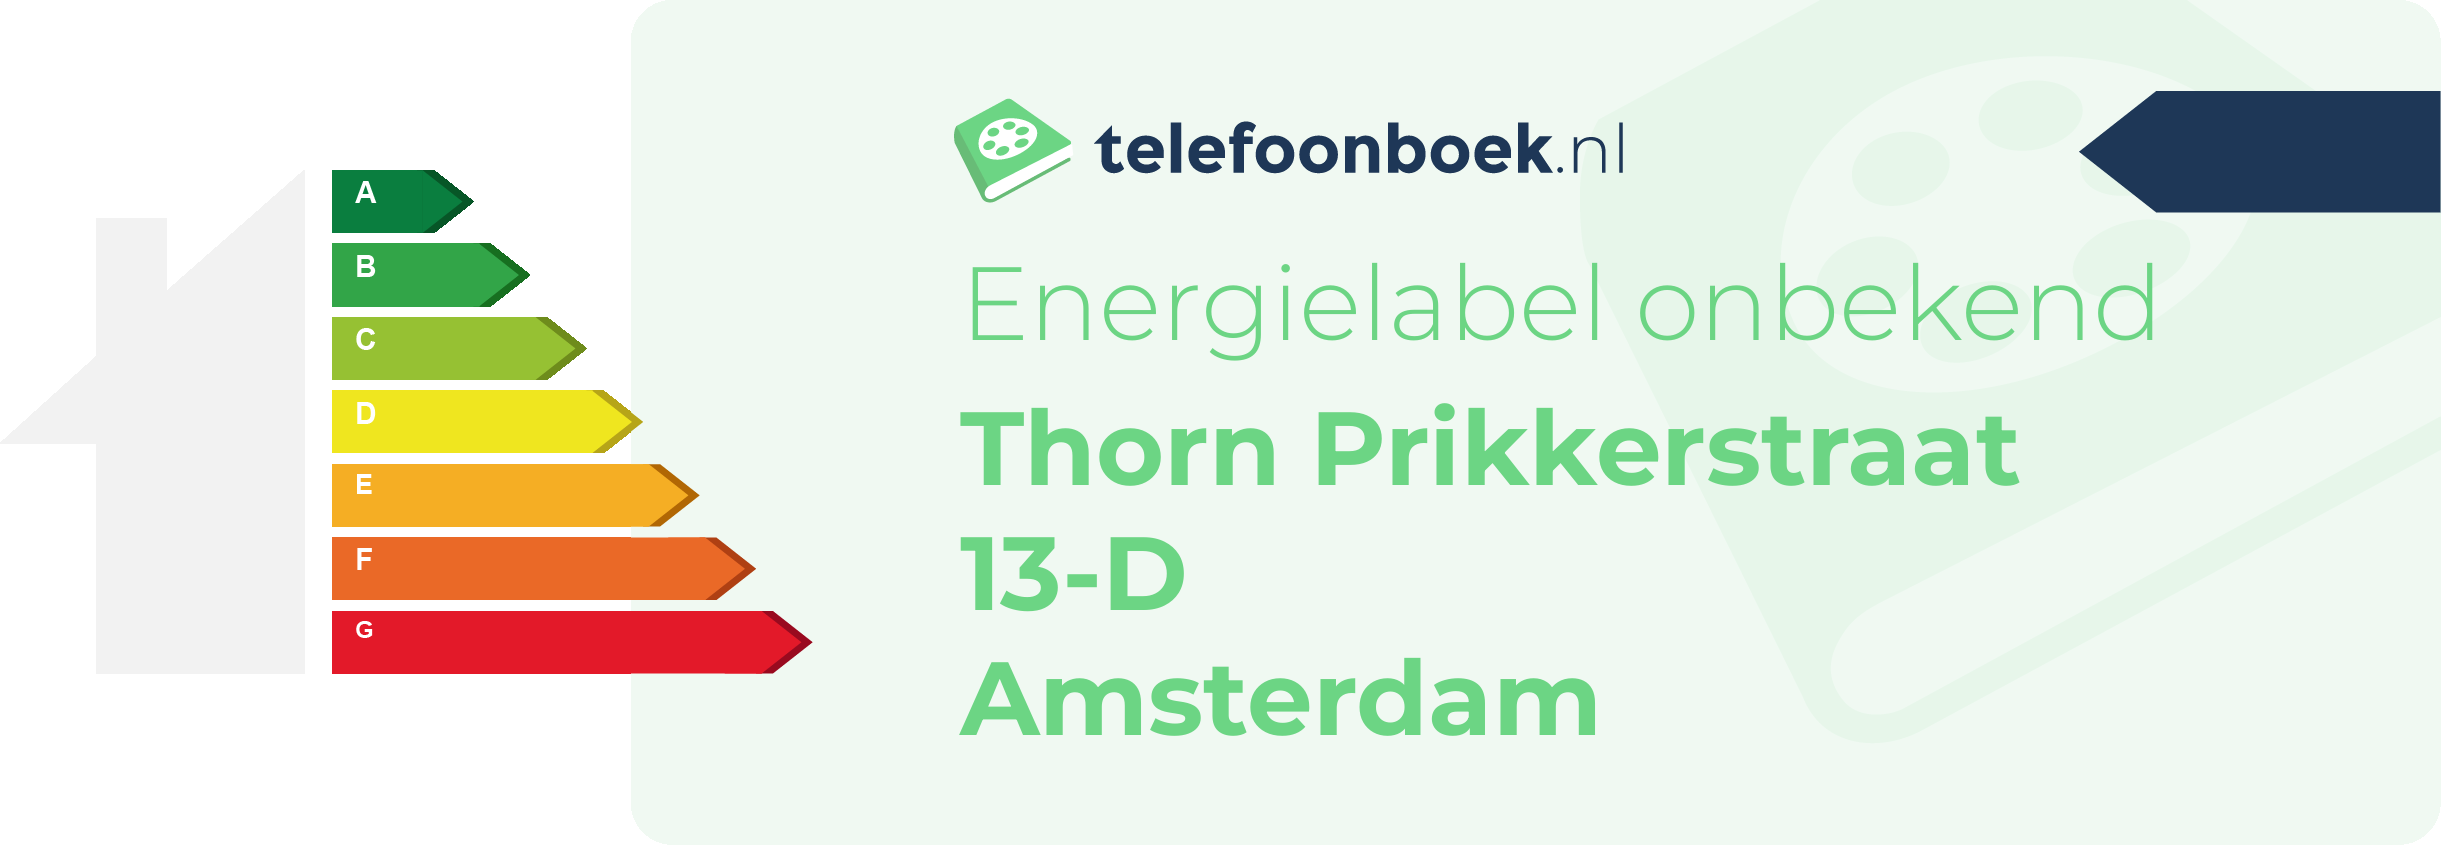 Energielabel Thorn Prikkerstraat 13-D Amsterdam